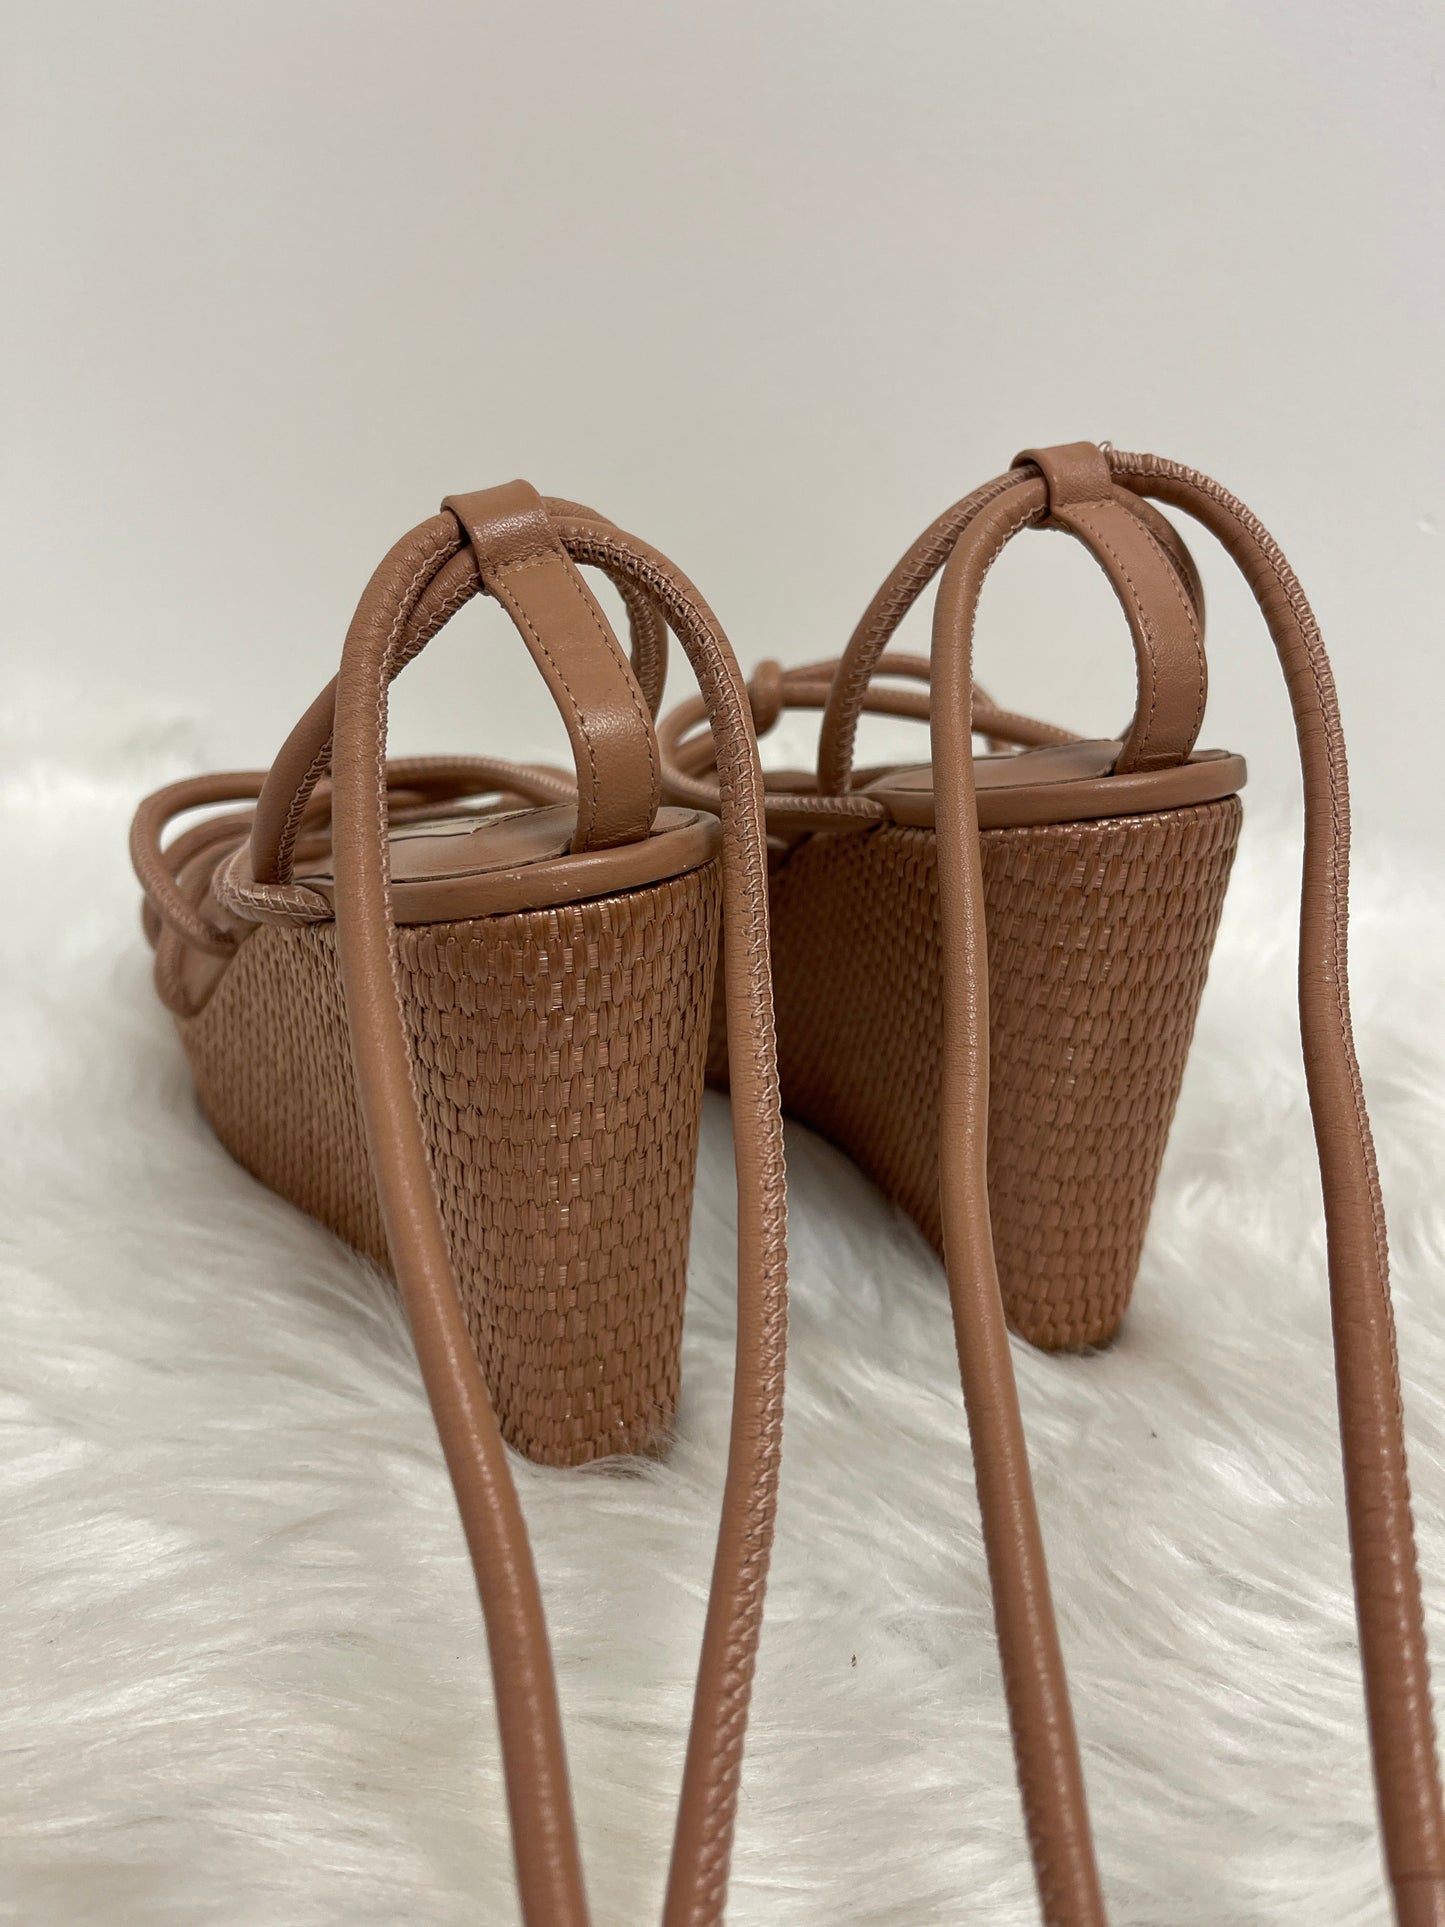 Brown Sandals Heels Wedge Antonio Melani, Size 10